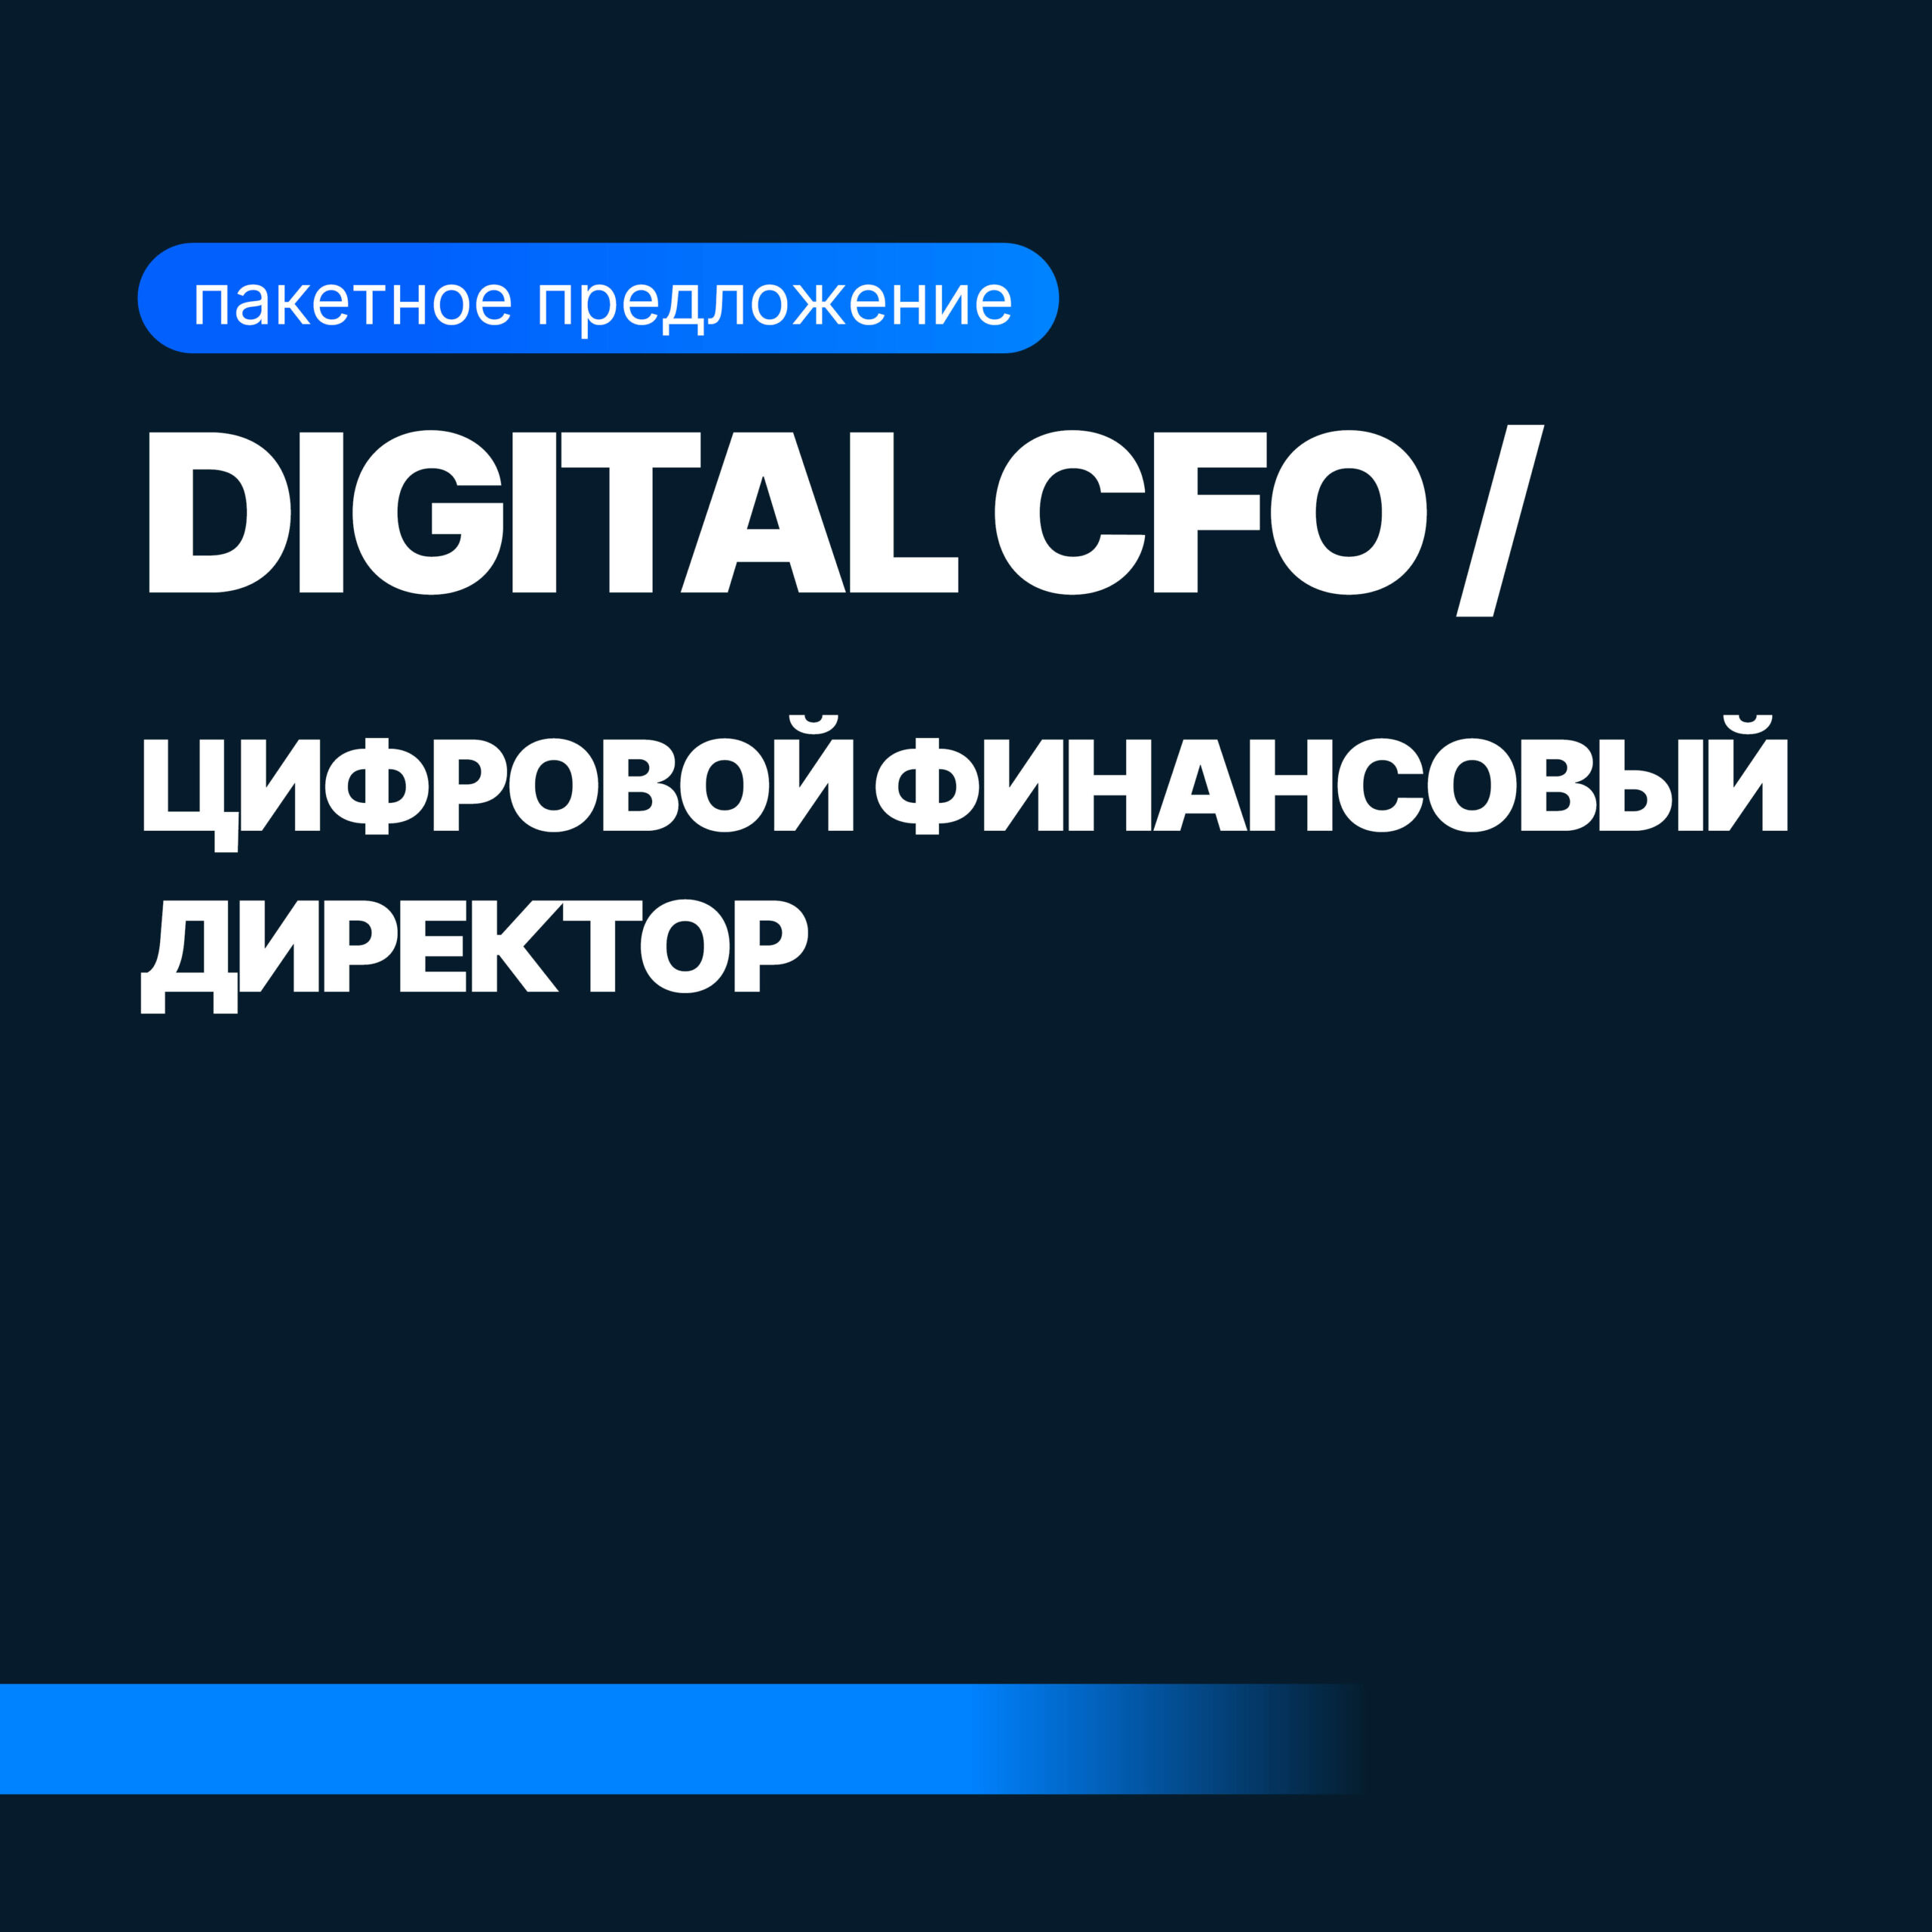 Digital CFO (Финансовый Директор + Бизнес-аналитик) копия финансовый аналитик 2989 до профессия финансовый аналитик